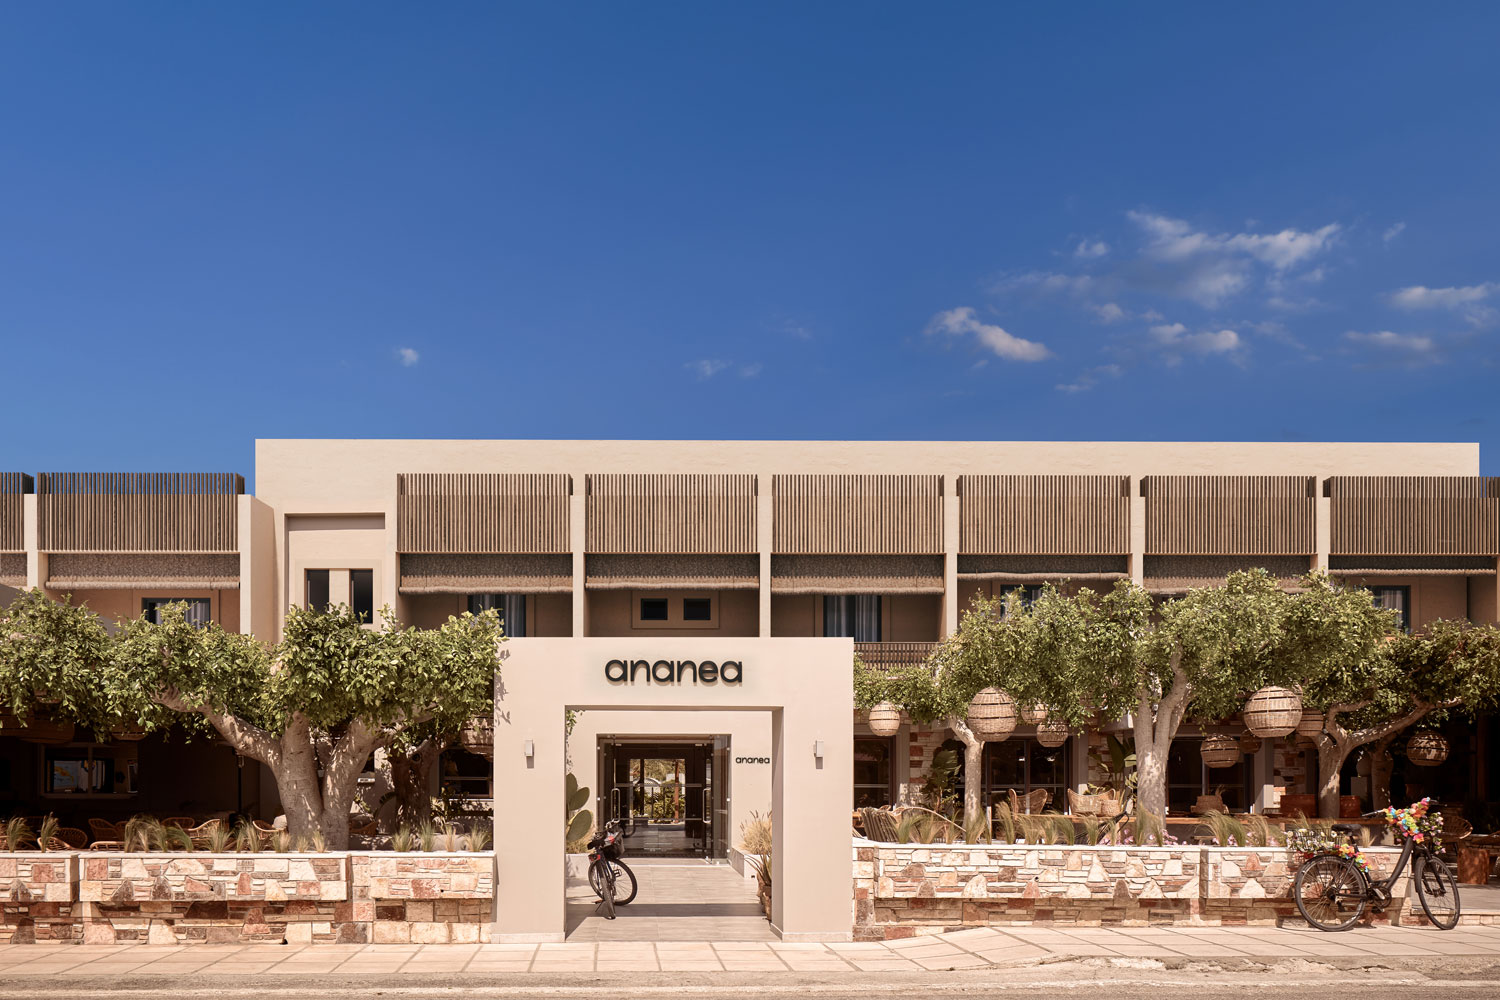 Die Frontfassade des neuen Lifestyle-Hotels Ananea auf der griechischen Insel Kos